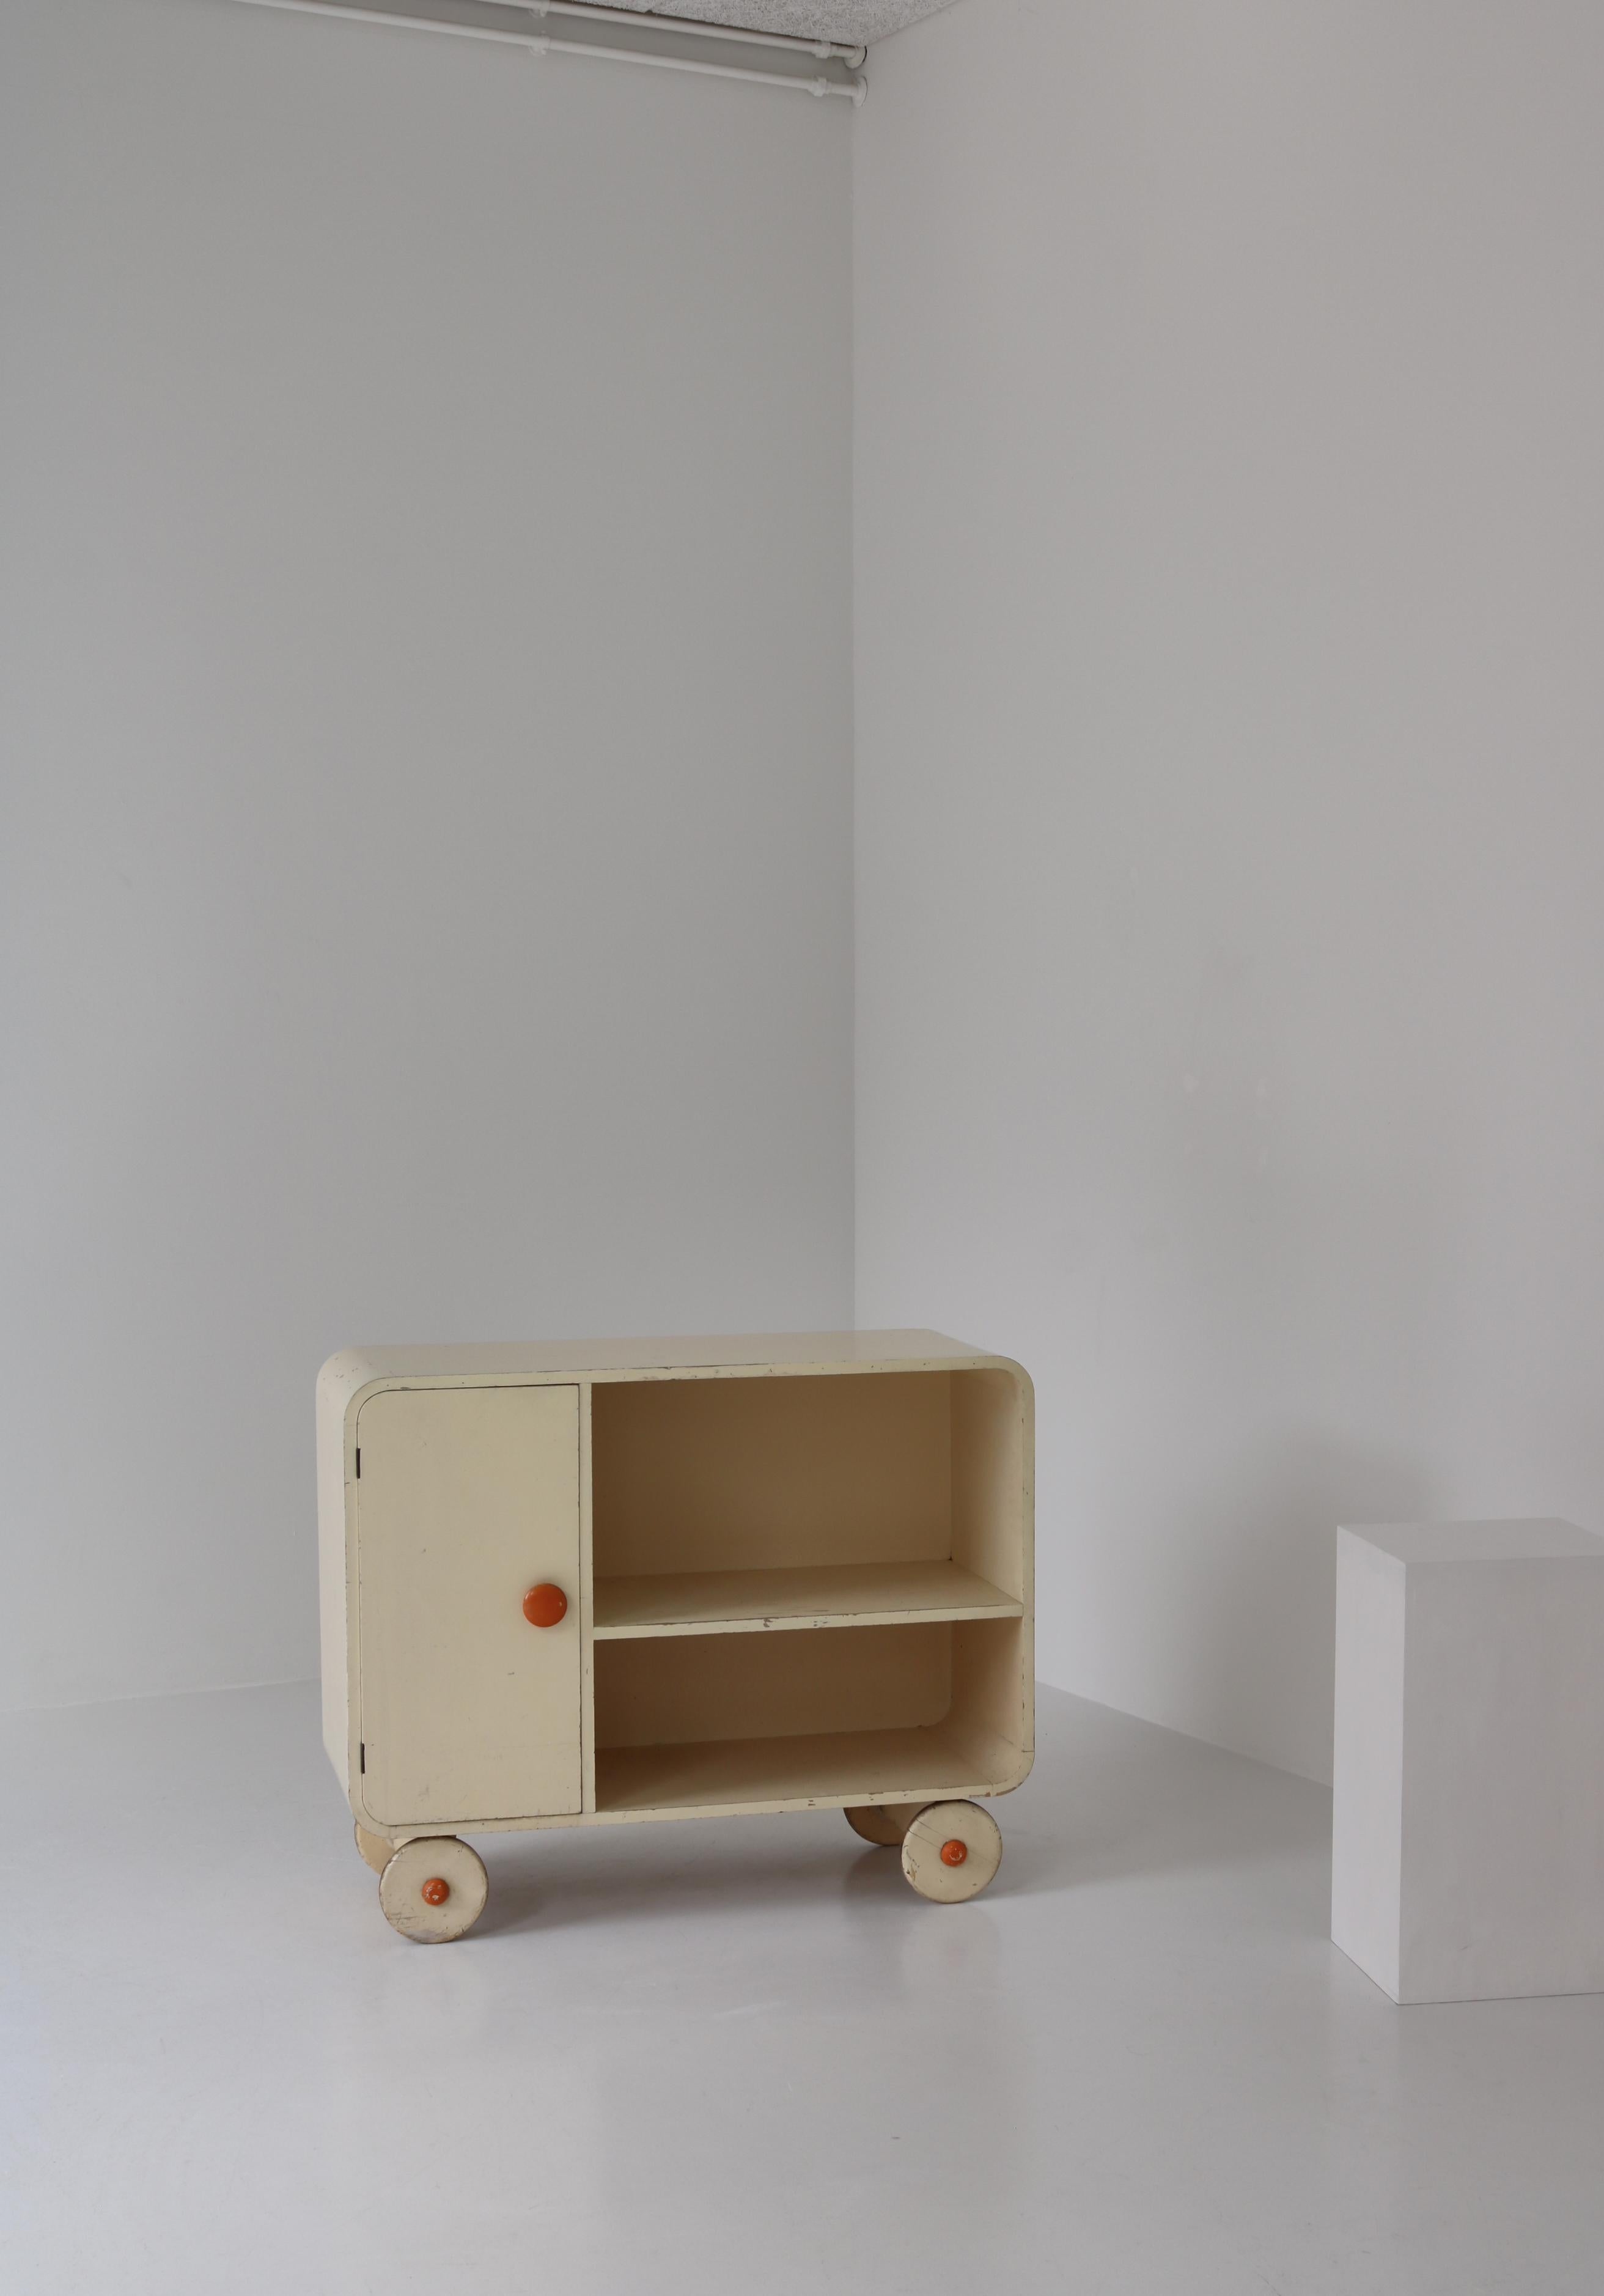 Einzigartiges frühmodernistisches Sideboard aus den 1930er Jahren in Skandinavien. Das Sideboard steht auf Holzrollen und kann verschoben werden. Originalfarbe.